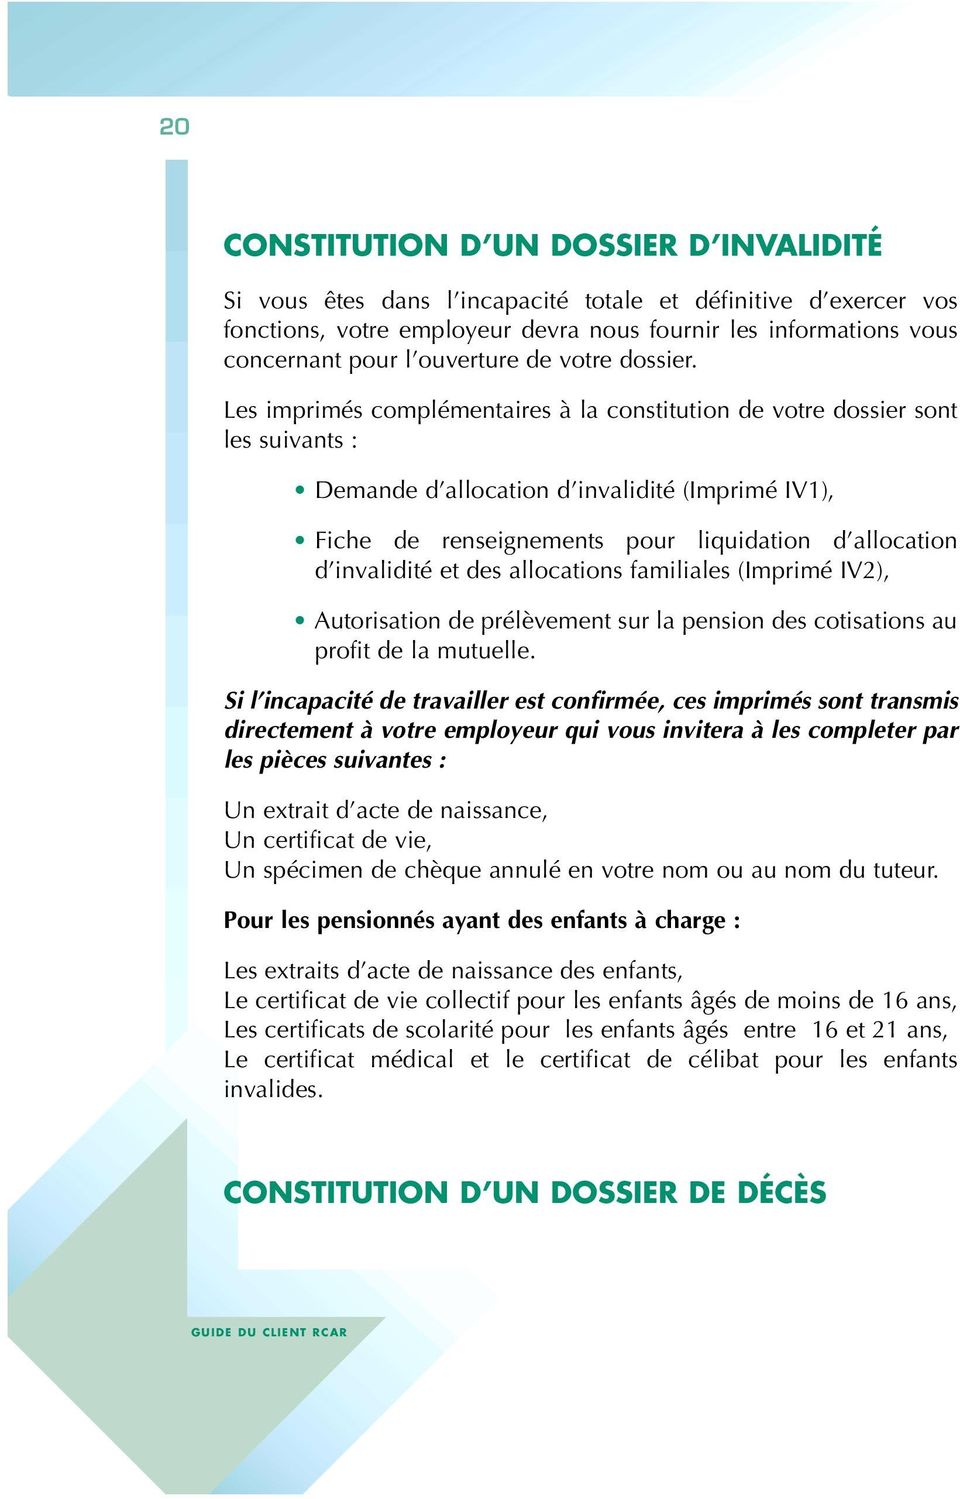 Les imprimés complémentaires à la constitution de votre dossier sont les suivants : Demande d allocation d invalidité (Imprimé IV1), Fiche de renseignements pour liquidation d allocation d invalidité